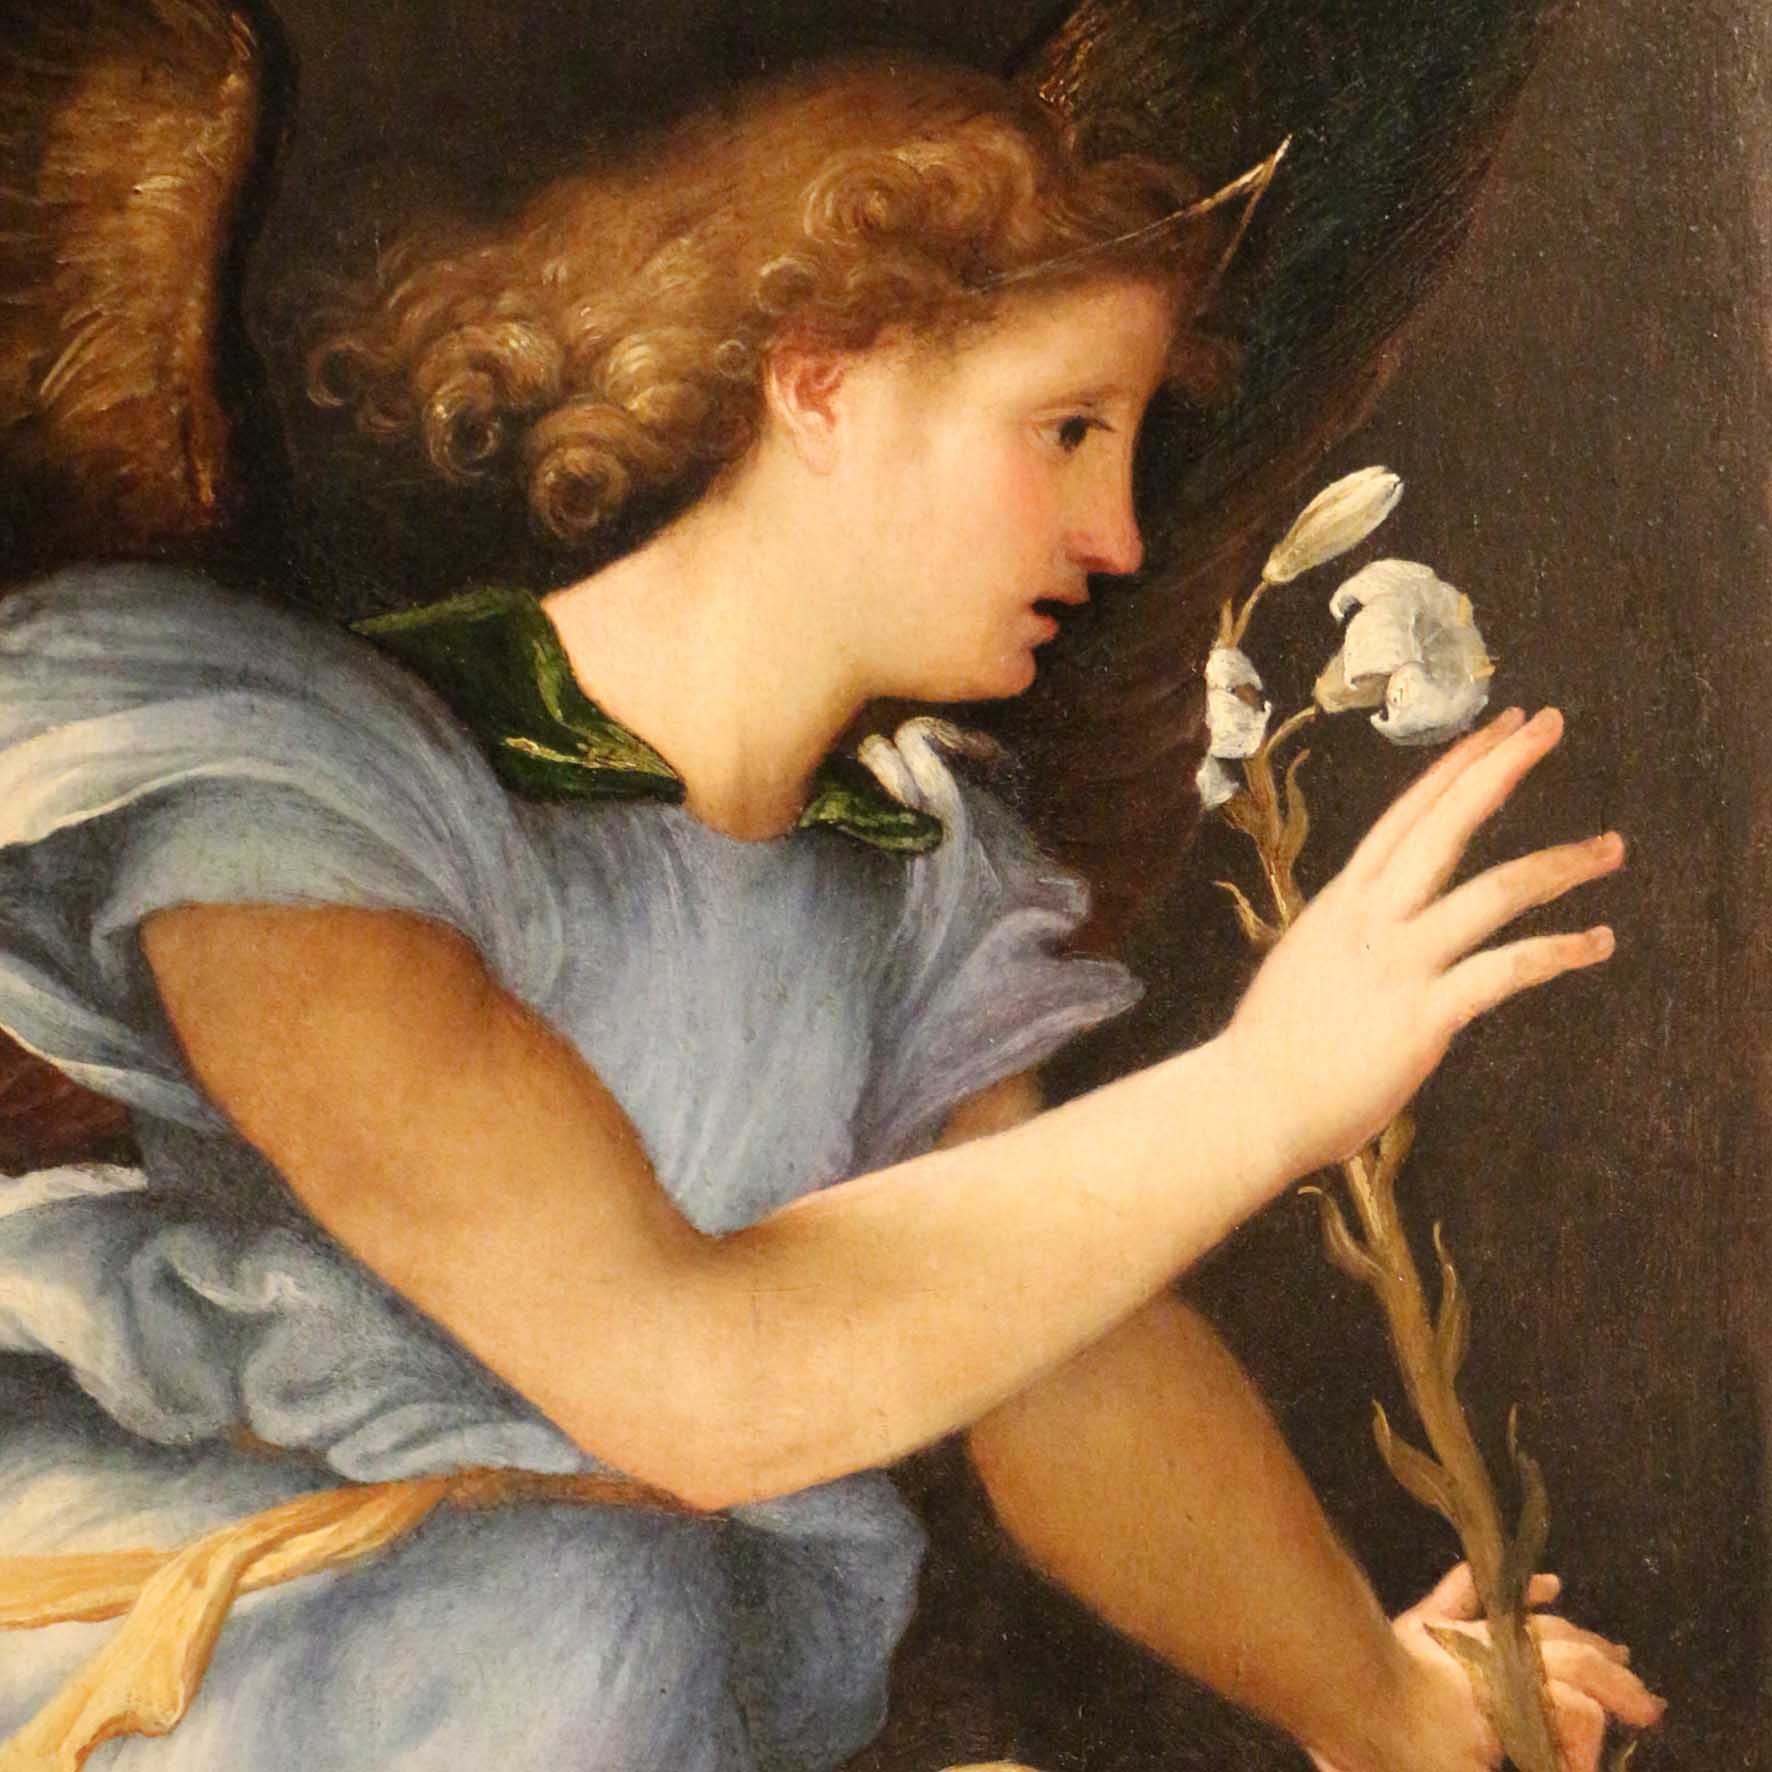 Lorenzo Lotto. The Renaissance in the Marche